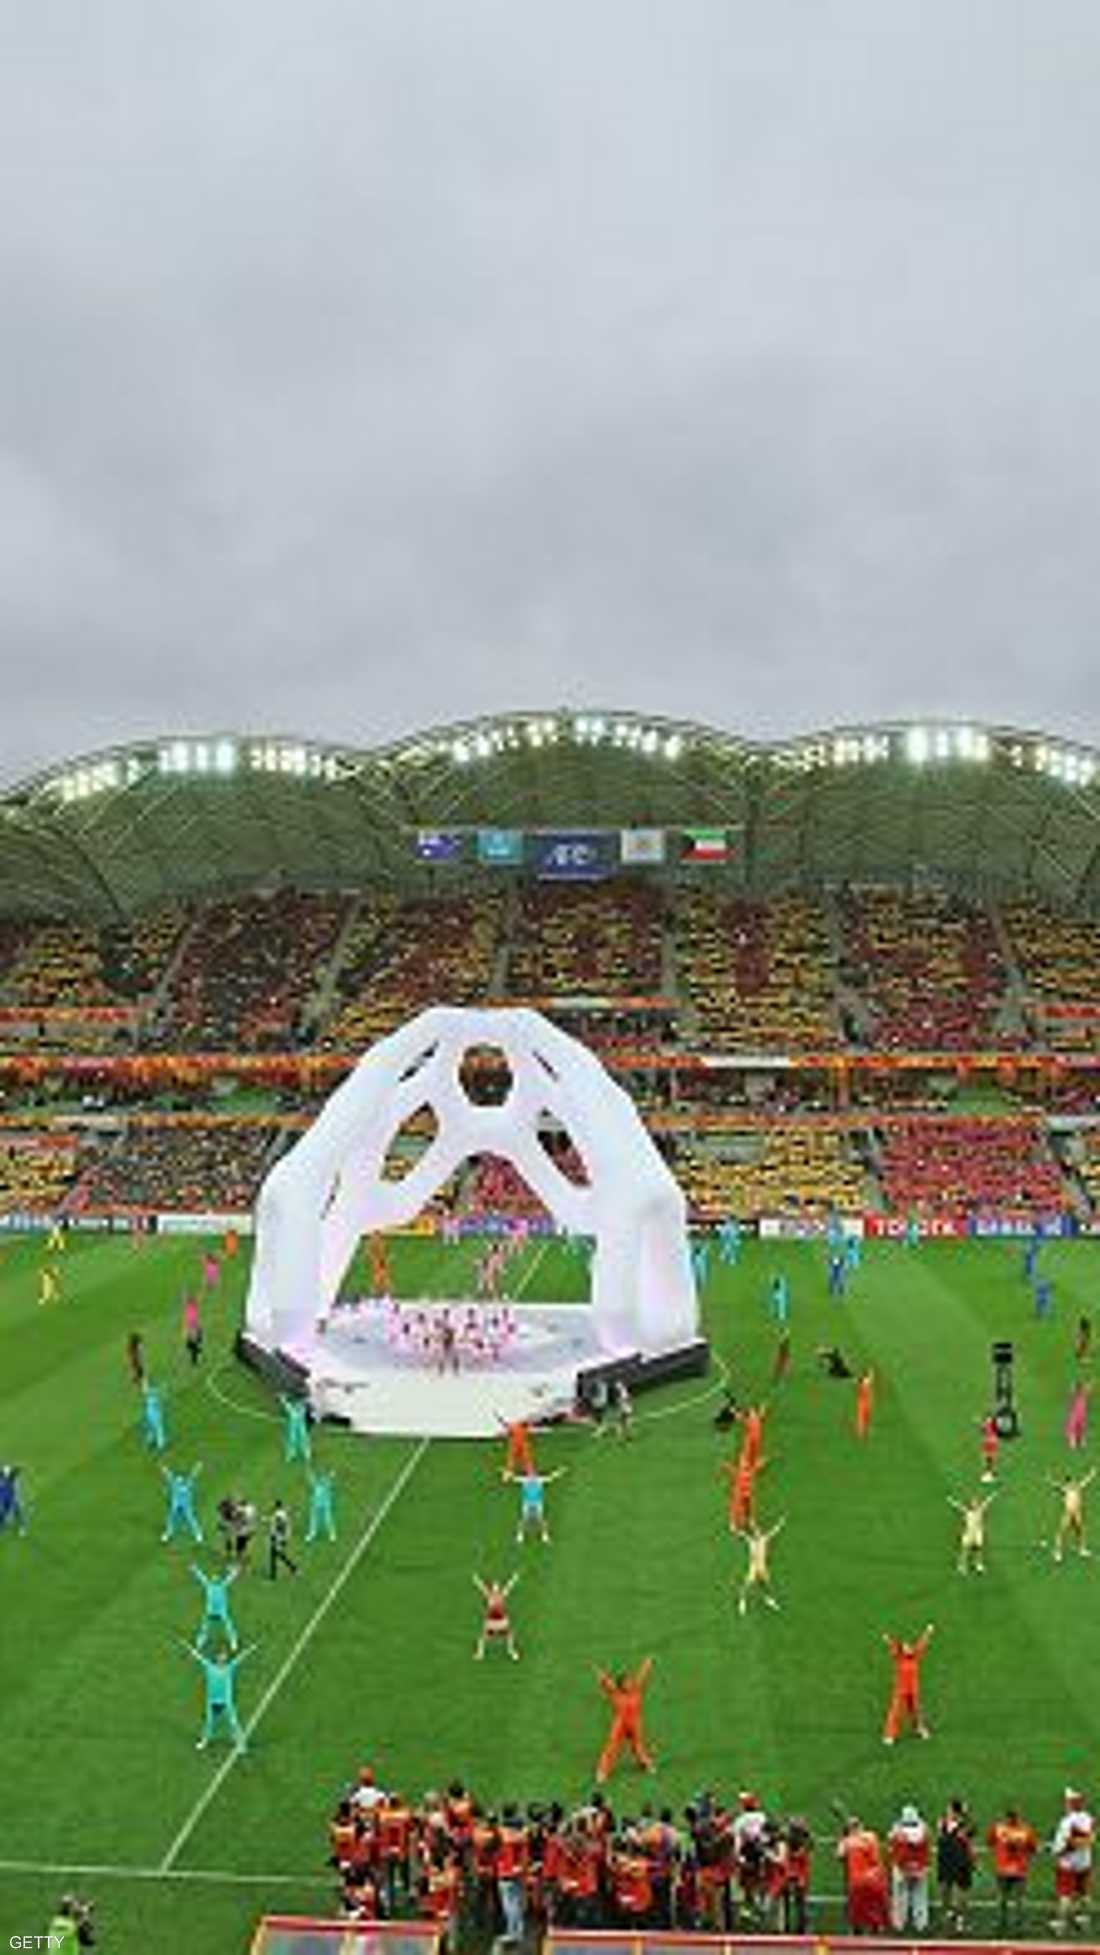 عكس حفل افتتاح كأس آسيا الذي أقيم في ملبورن الثقافة الأسترالية